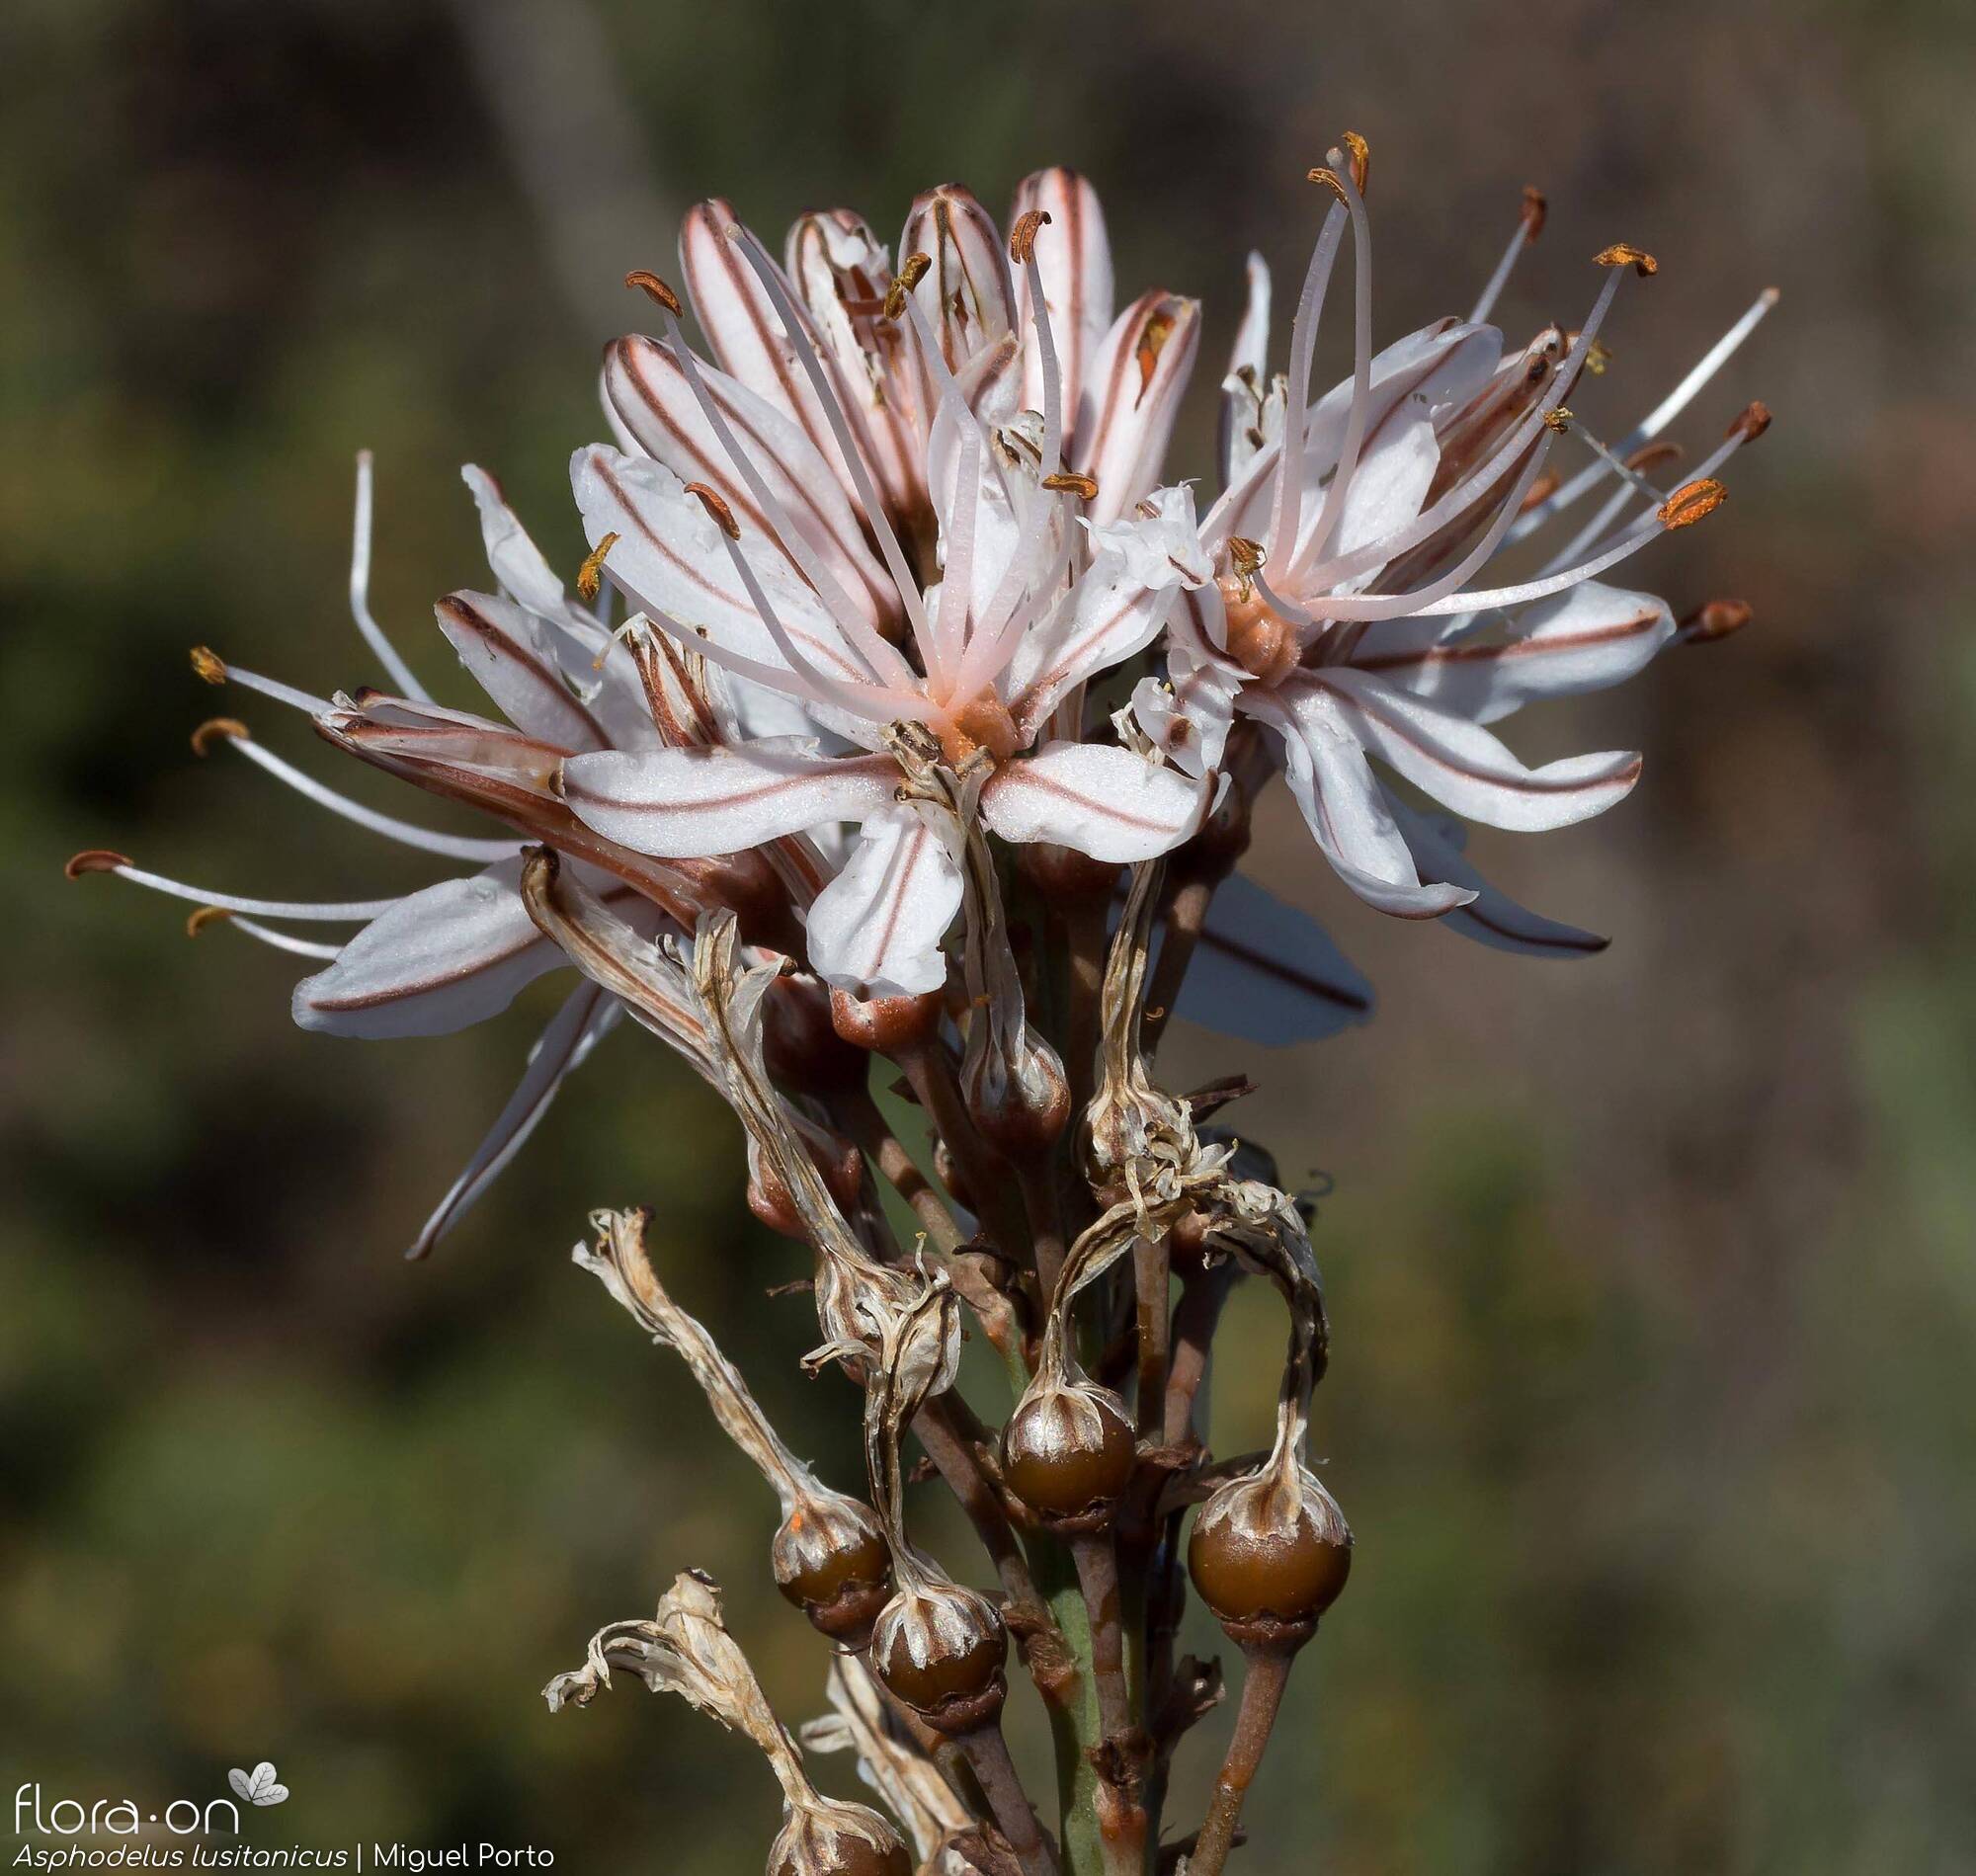 Asphodelus lusitanicus - Flor (geral) | Miguel Porto; CC BY-NC 4.0